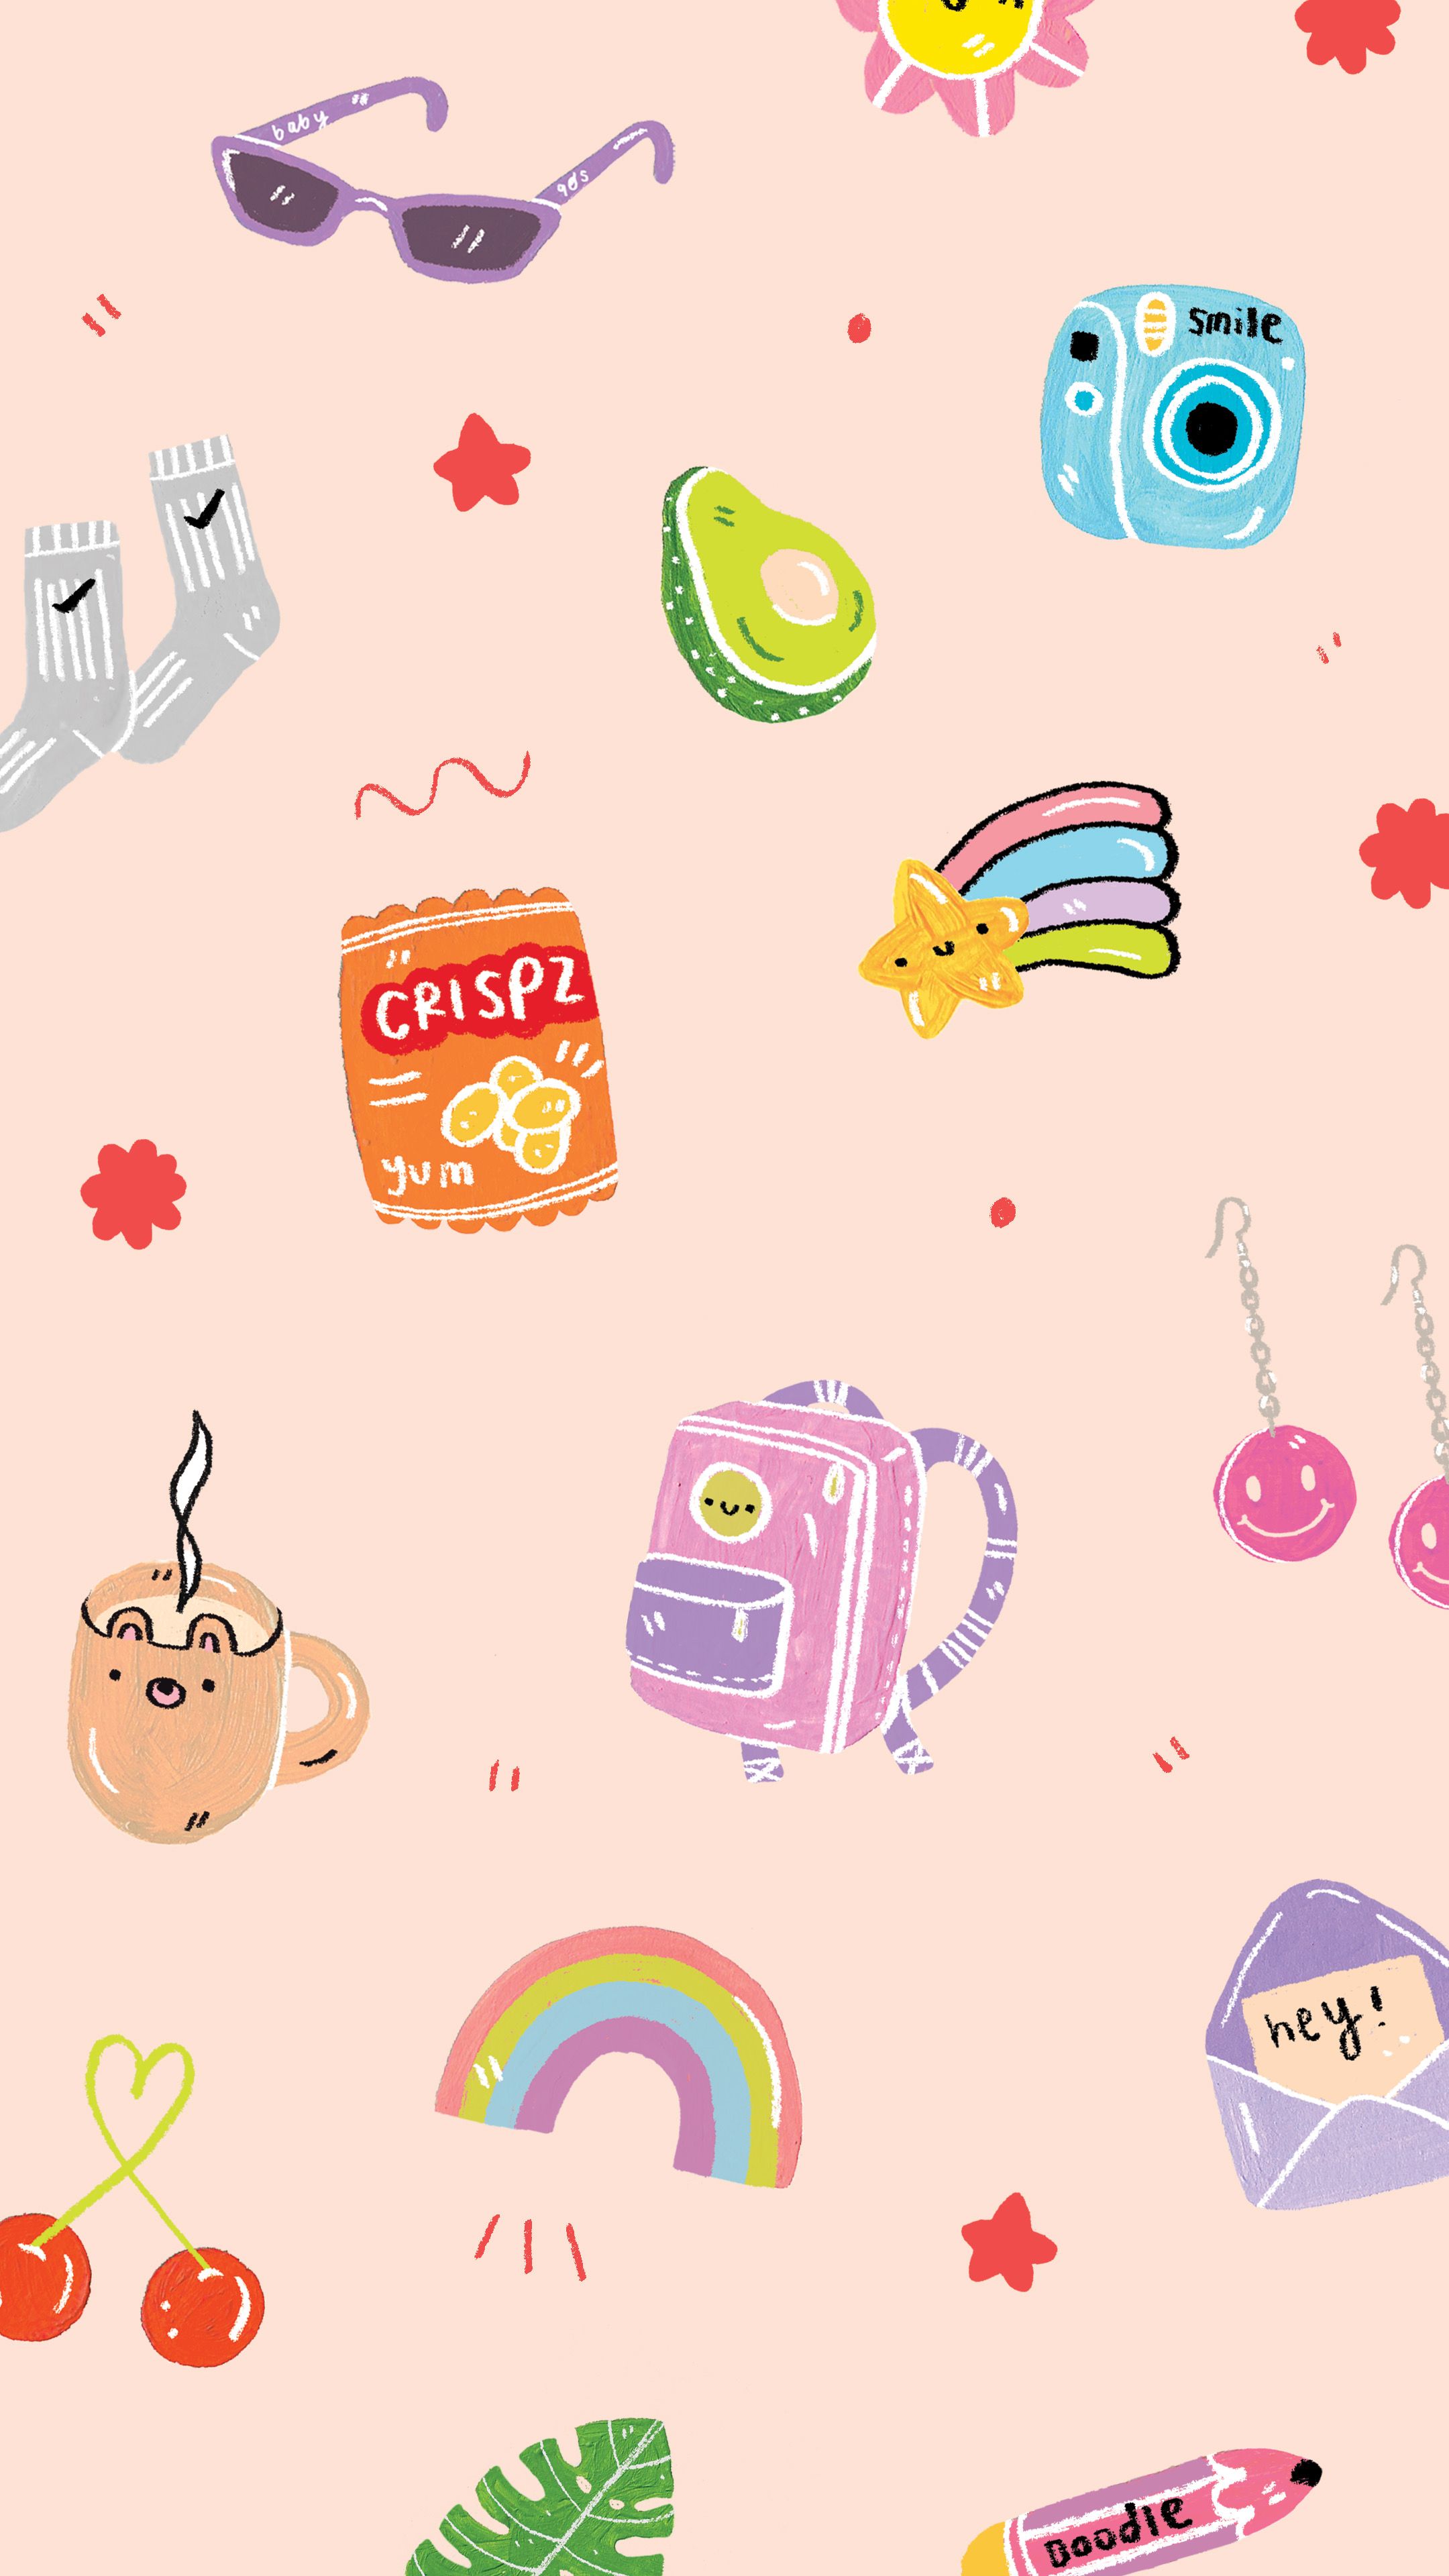 Hình nền iPhone cute dễ thương dành cho hội bánh bèo xem ngay nhé